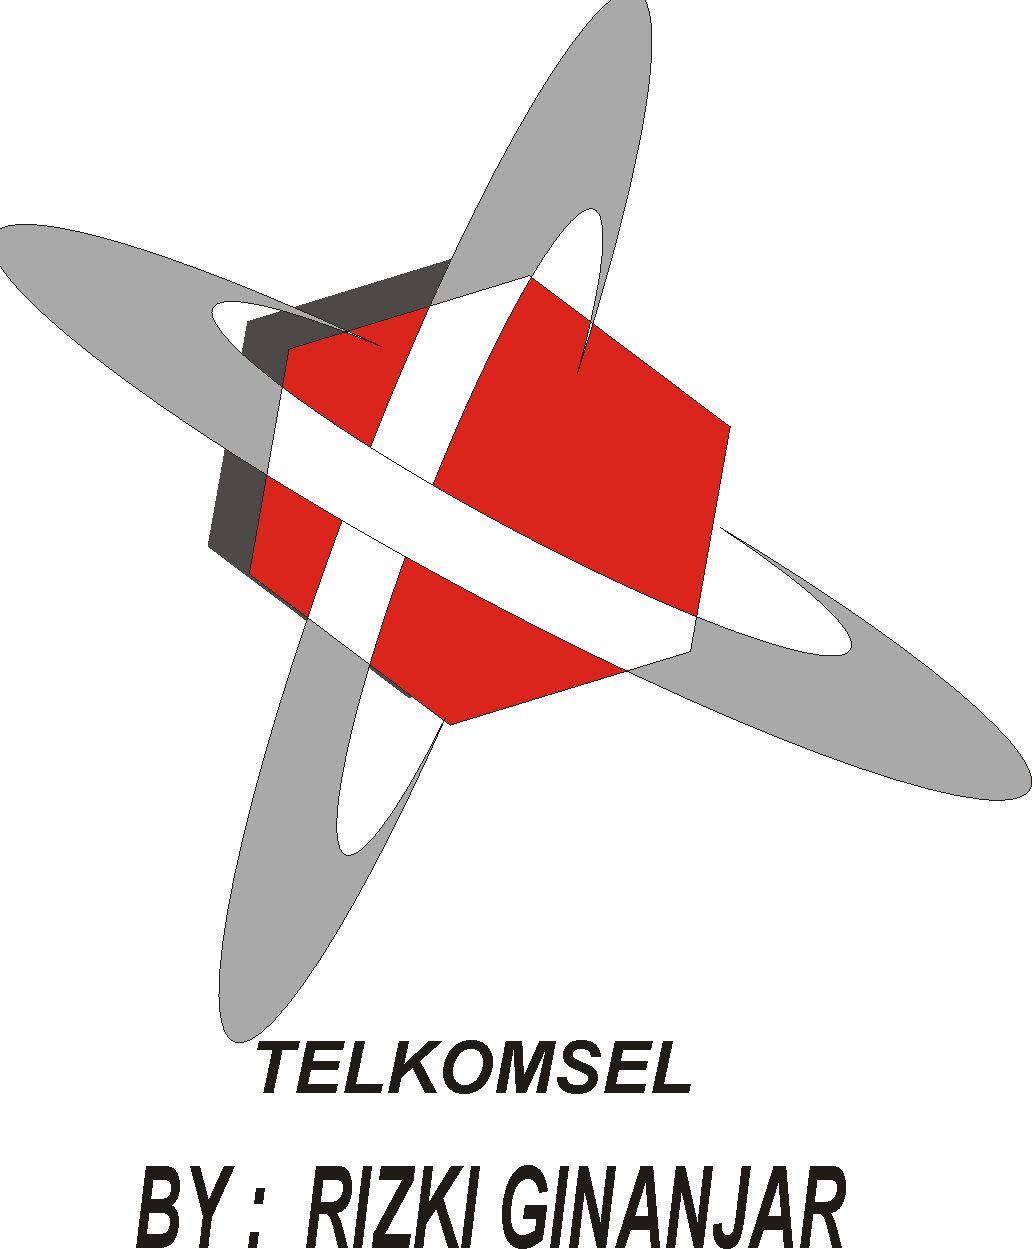 rizki ginanjar blog cara membuat logo telkomsel 